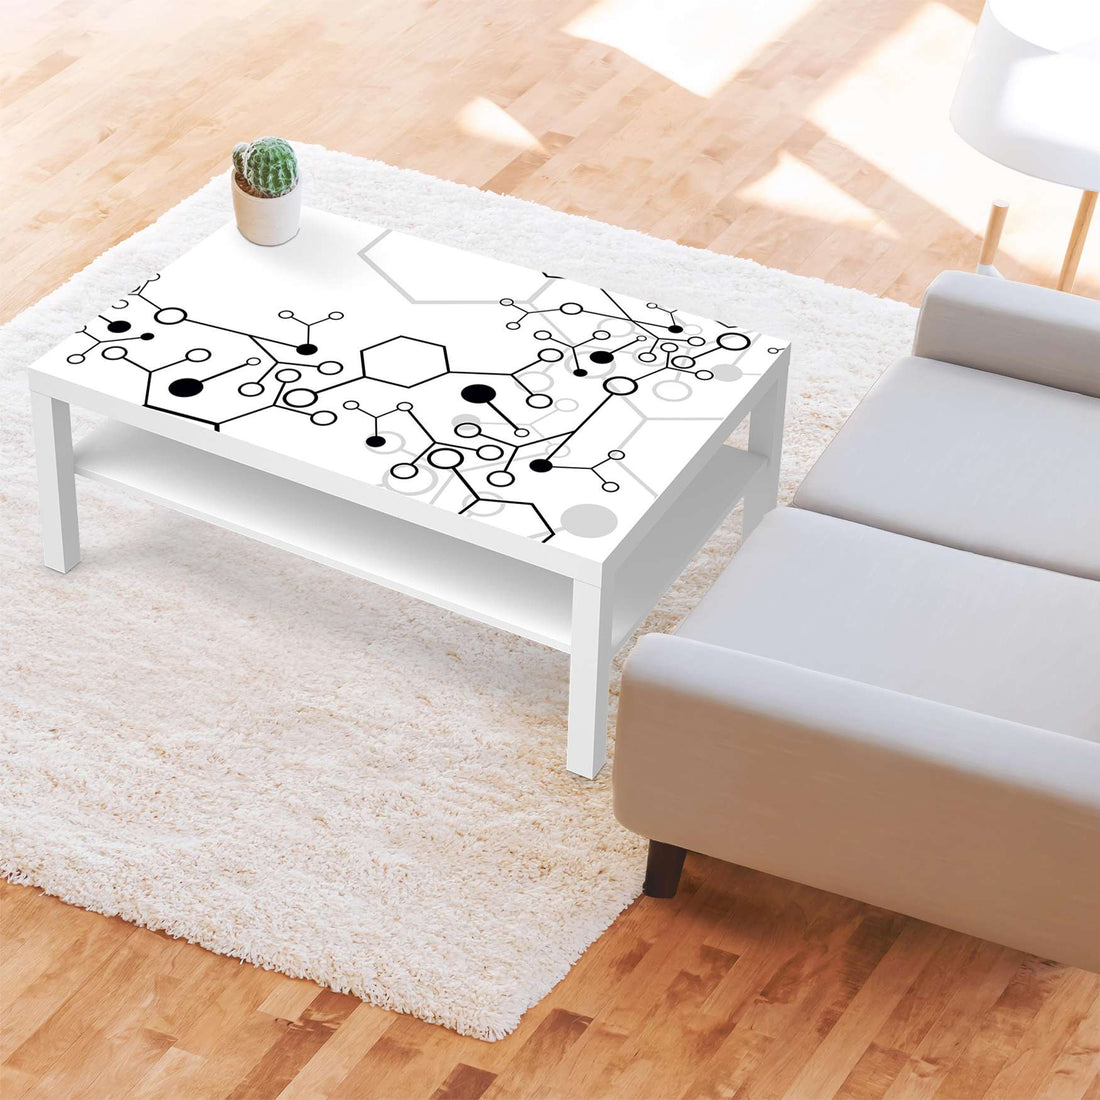 Klebefolie Atomic 1 - IKEA Lack Tisch 118x78 cm - Wohnzimmer